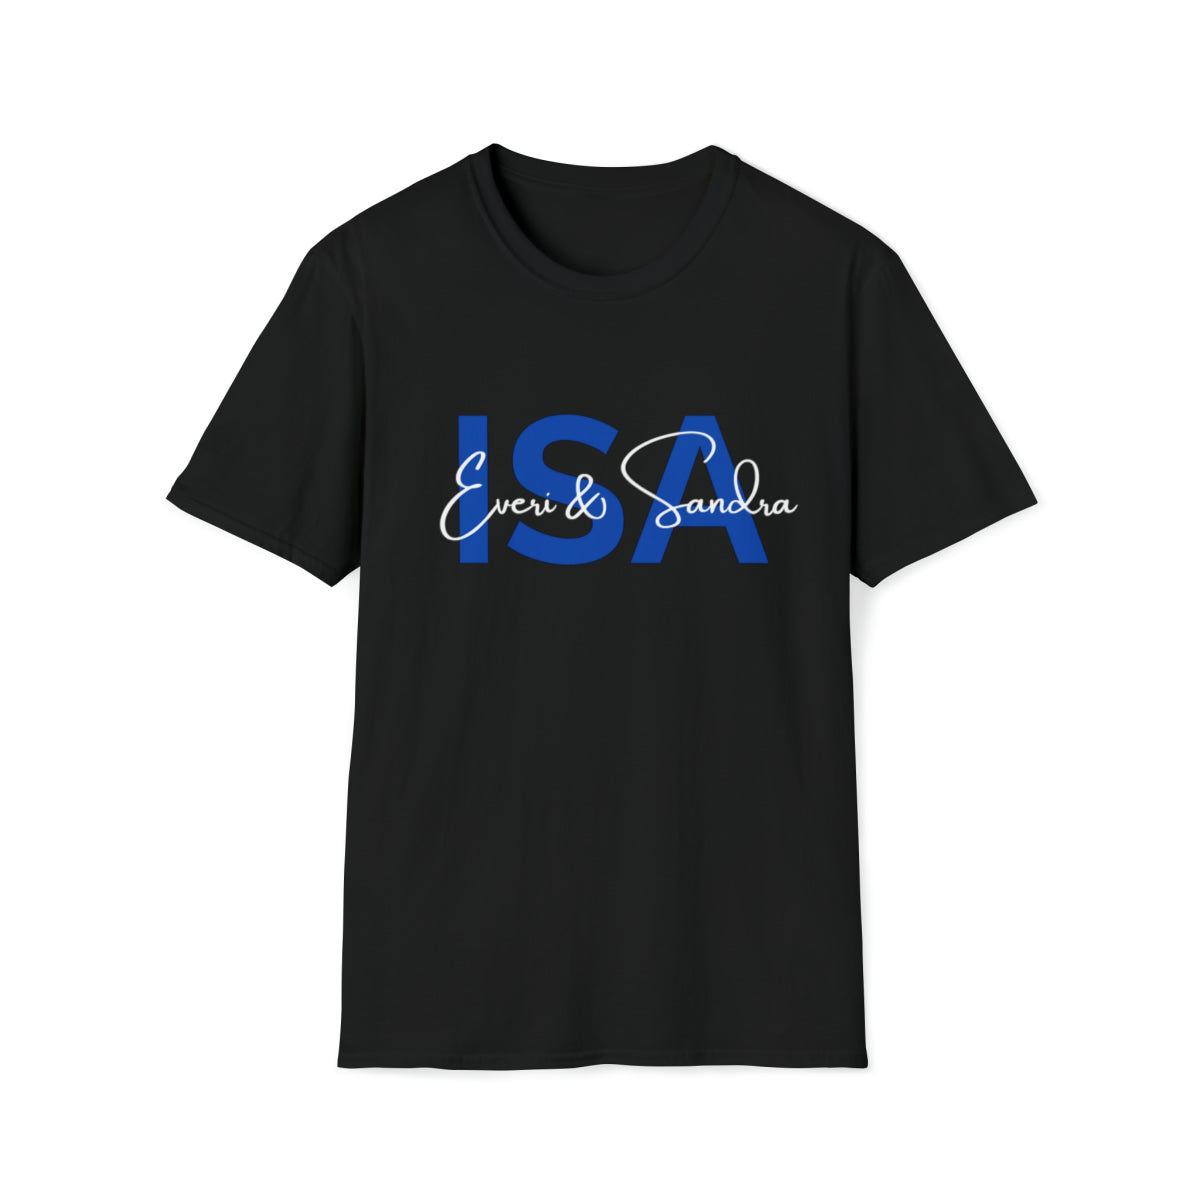 Isa of T-Shirt